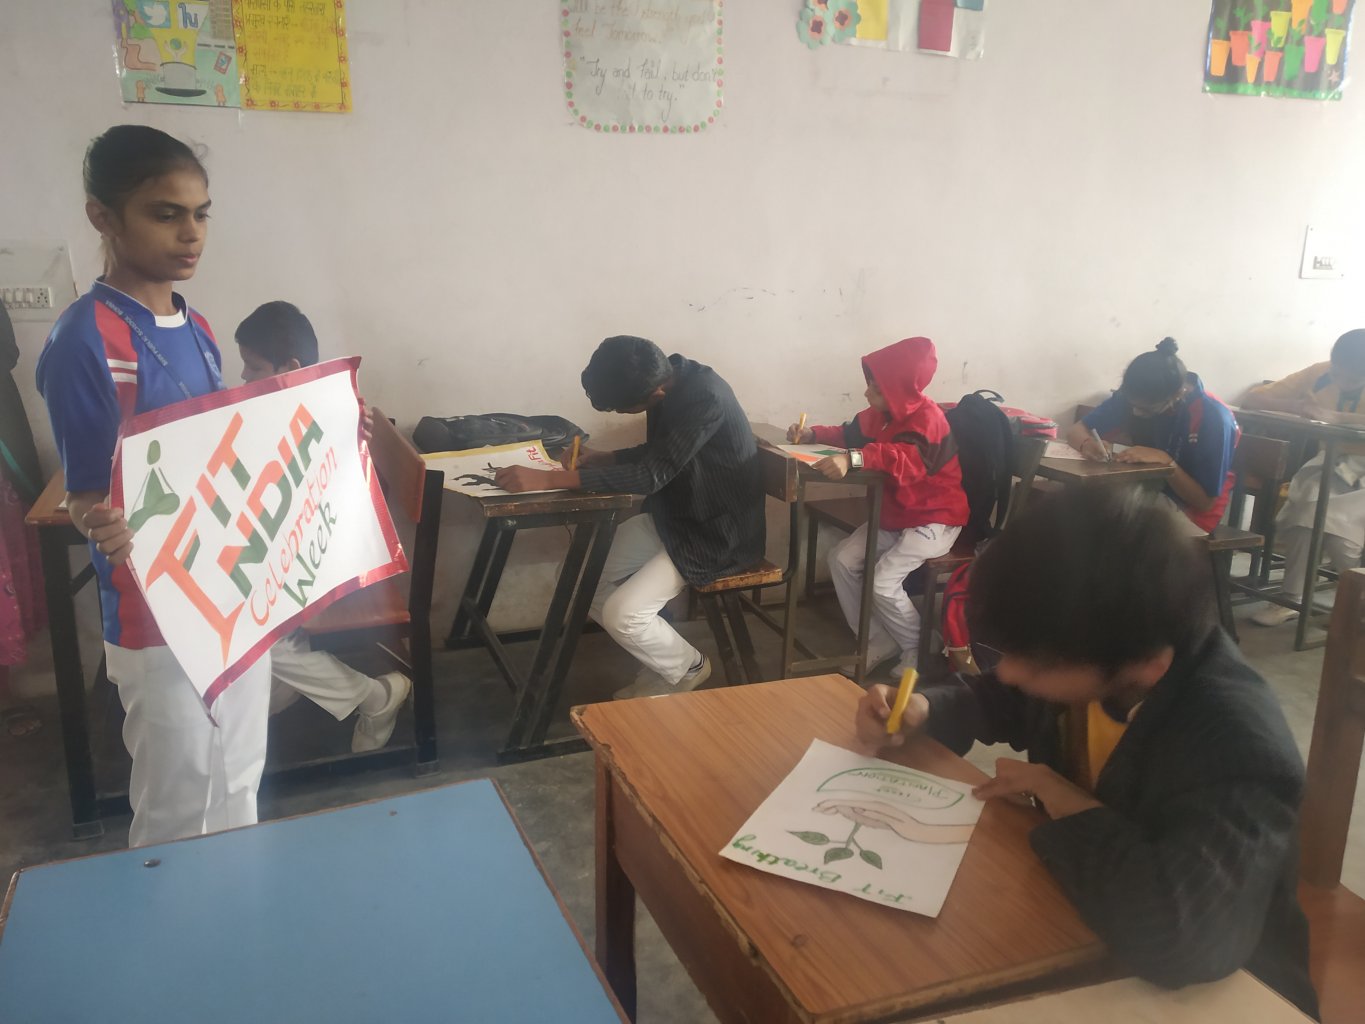 FIT INDIA SCHOOL WEEK 2019